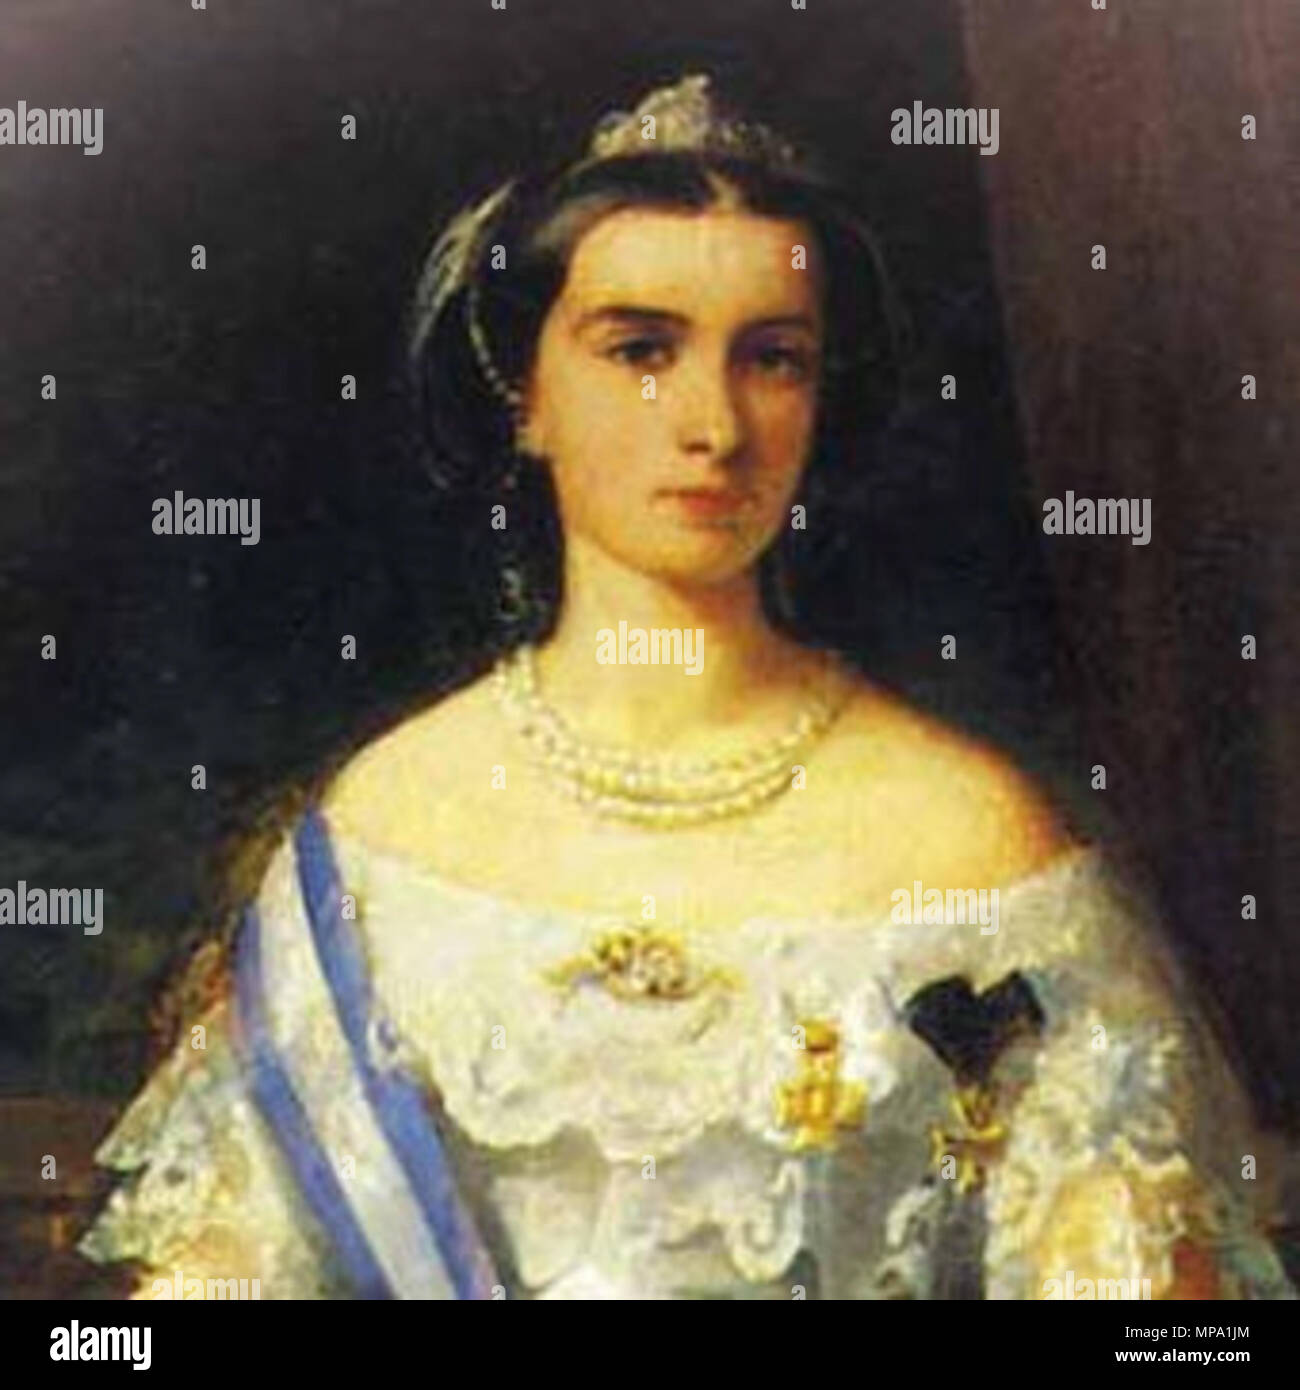 . Anglais : Un portrait de Maria Sofia (1841-1925), épouse de François II des Deux-Siciles. Né comme Maria Sophie Amalie dans la famille royale bavaroise des Wittelsbach elle avait le titre de Duchesse en Bavière. Elle était la fille de Maximilien, duc de Bavière et d'Ludovika, Princesse royale de Bavière et était une jeune sœur de l'Impératrice Elisabeth ('Sissi') qui épousa l'empereur François-Joseph d'Autriche. Elle a épousé François en 1859 et il devint roi quelques mois plus tard. Bien que le royaume a été perdu dans le lecteur d'unir l'Italie durant le siège de Gaète (1860-1861) elle a démontré beaucoup de courage Banque D'Images